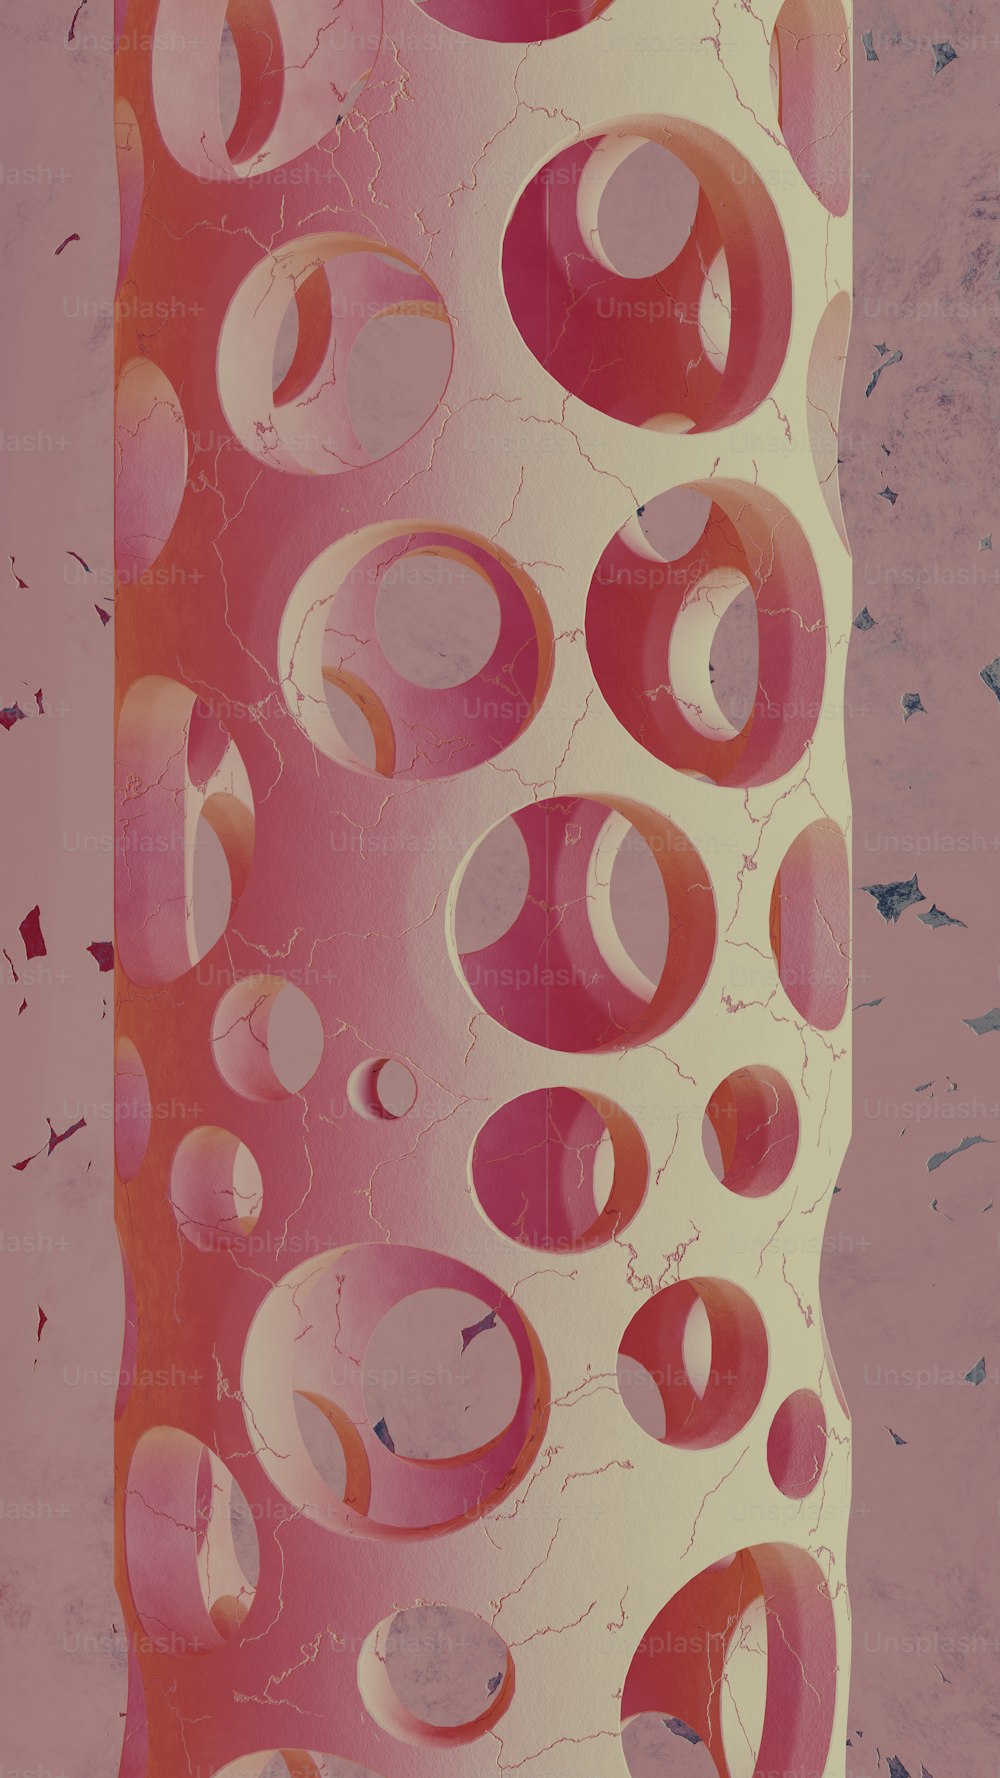 eine rosa-weiße Vase mit Kreisen darauf